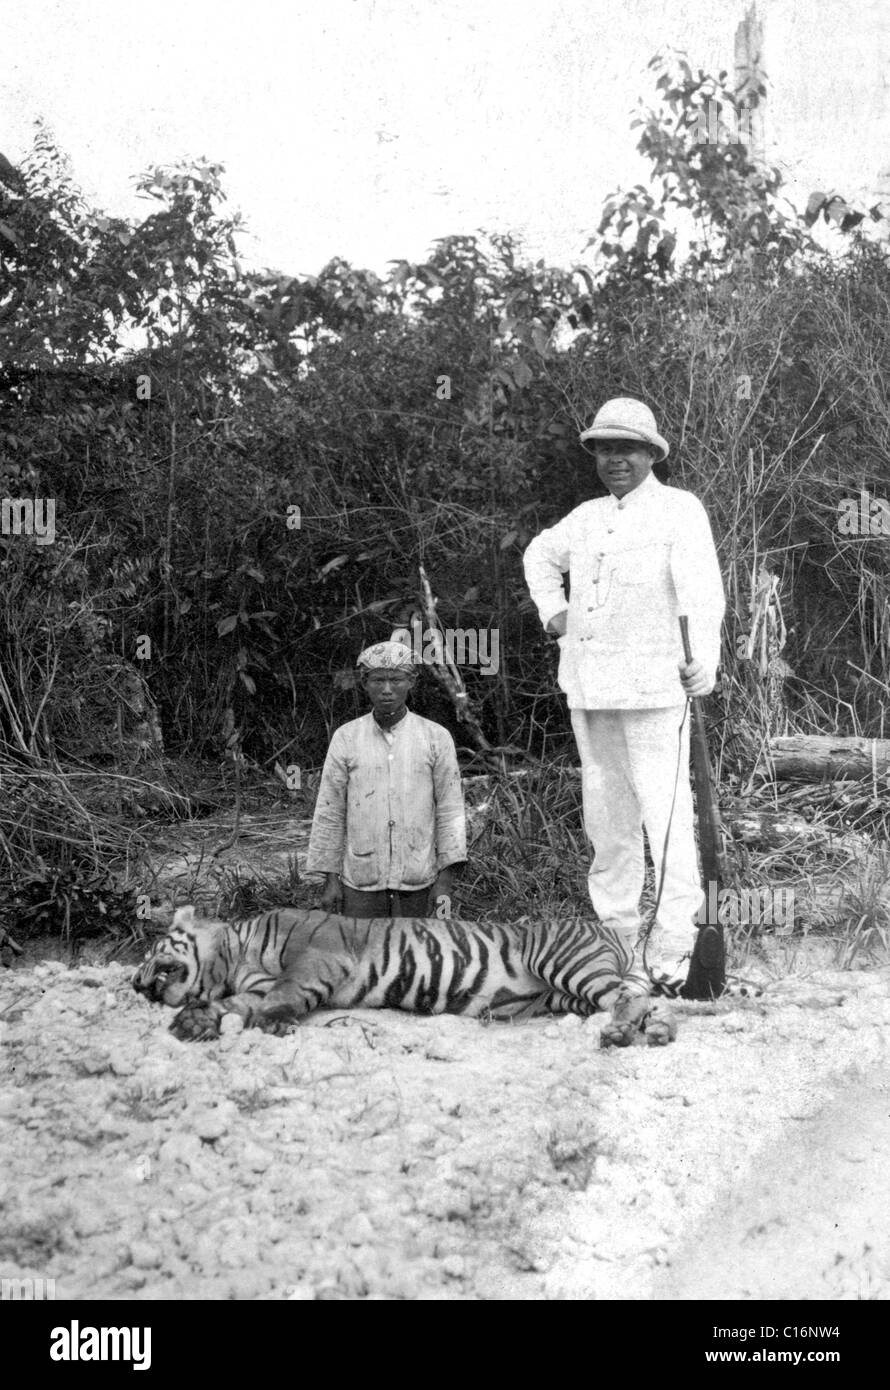 Fotografía Histórica, cazador con un tigre muerto Foto de stock